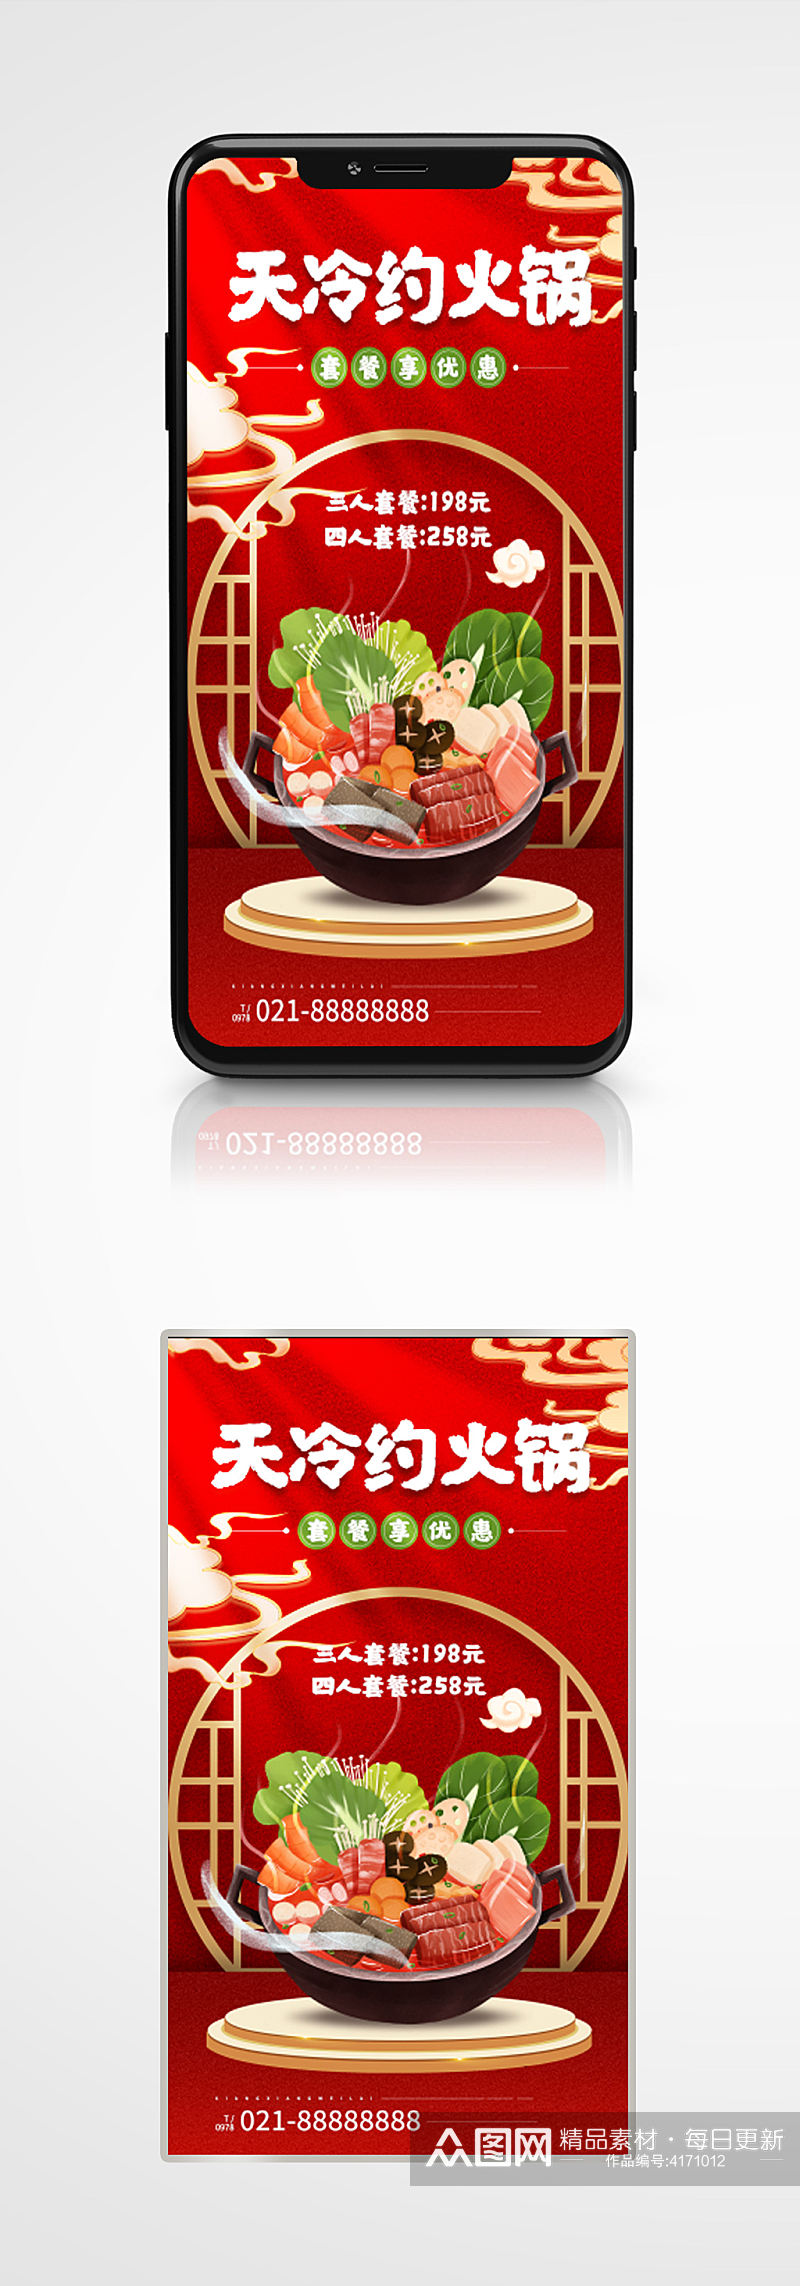 火锅店美食自助特惠红色手机海报手绘促销素材